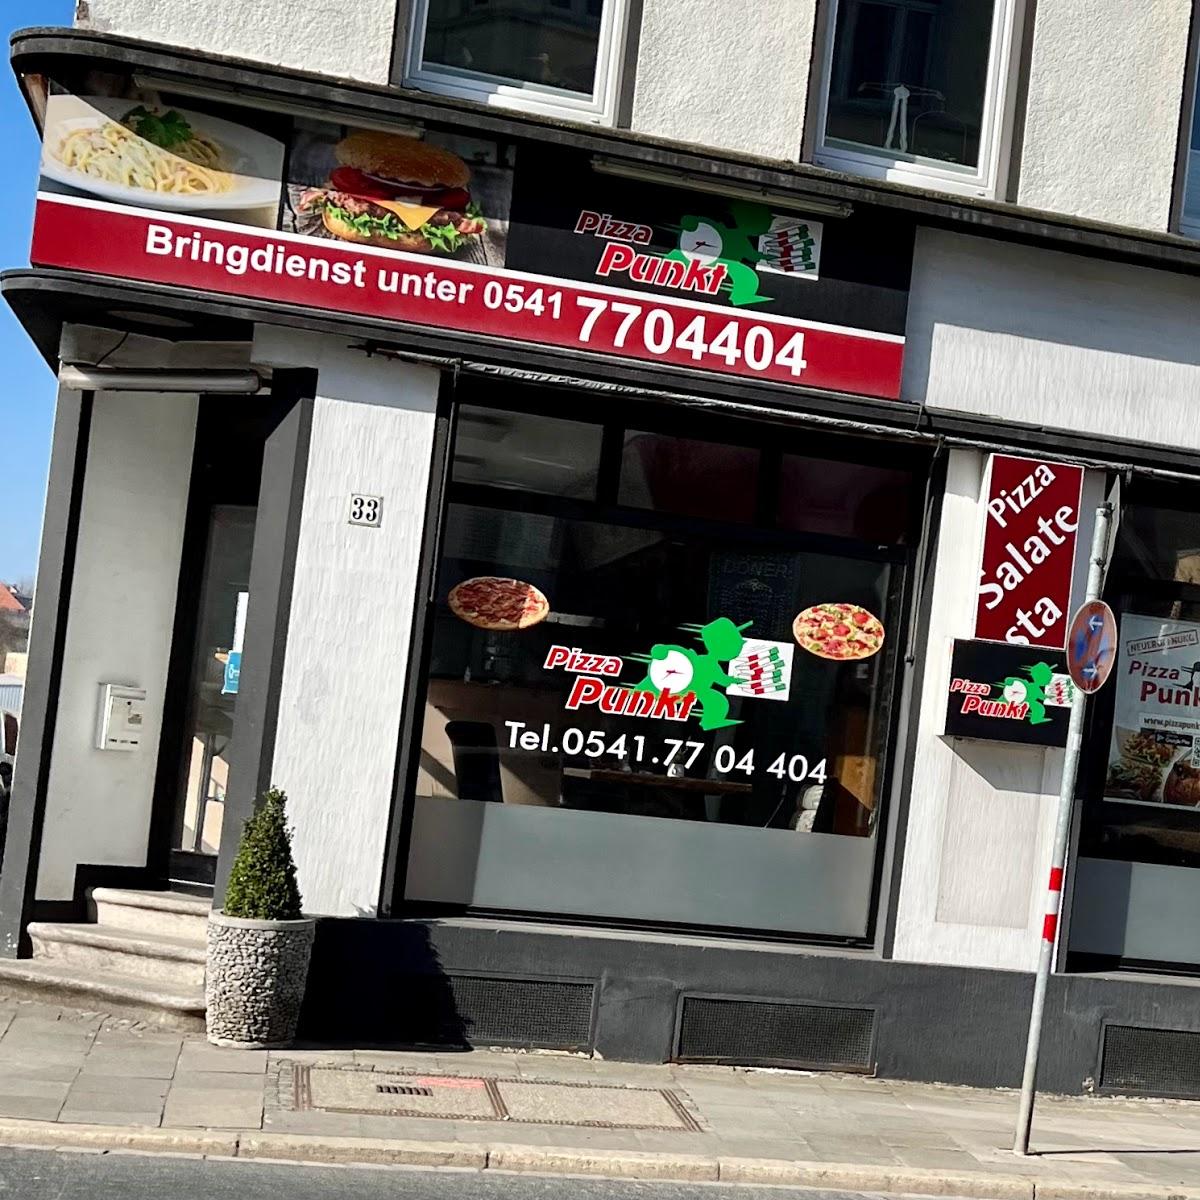 Restaurant "Pizza Punkt" in Osnabrück